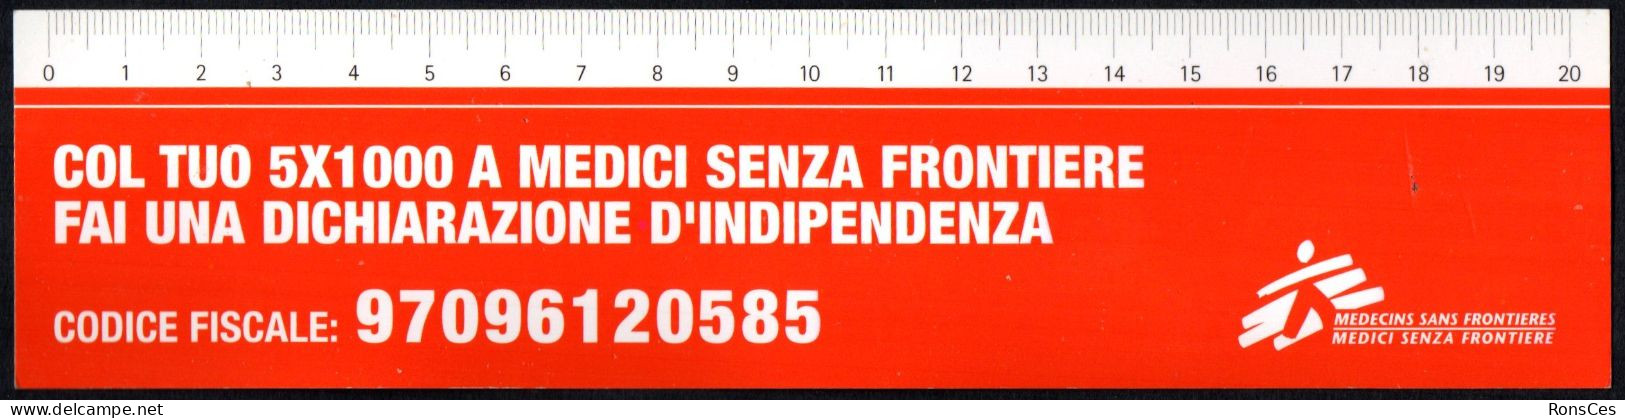 ITALIA SEGNALIBRO / BOOKMARK / RIGHELLO - MEDICI SENZA FRONTIERE COL TUO 5x1000 FAI UNA DICHIARAZIONE D'INDIPENDENZA - I - Marque-Pages